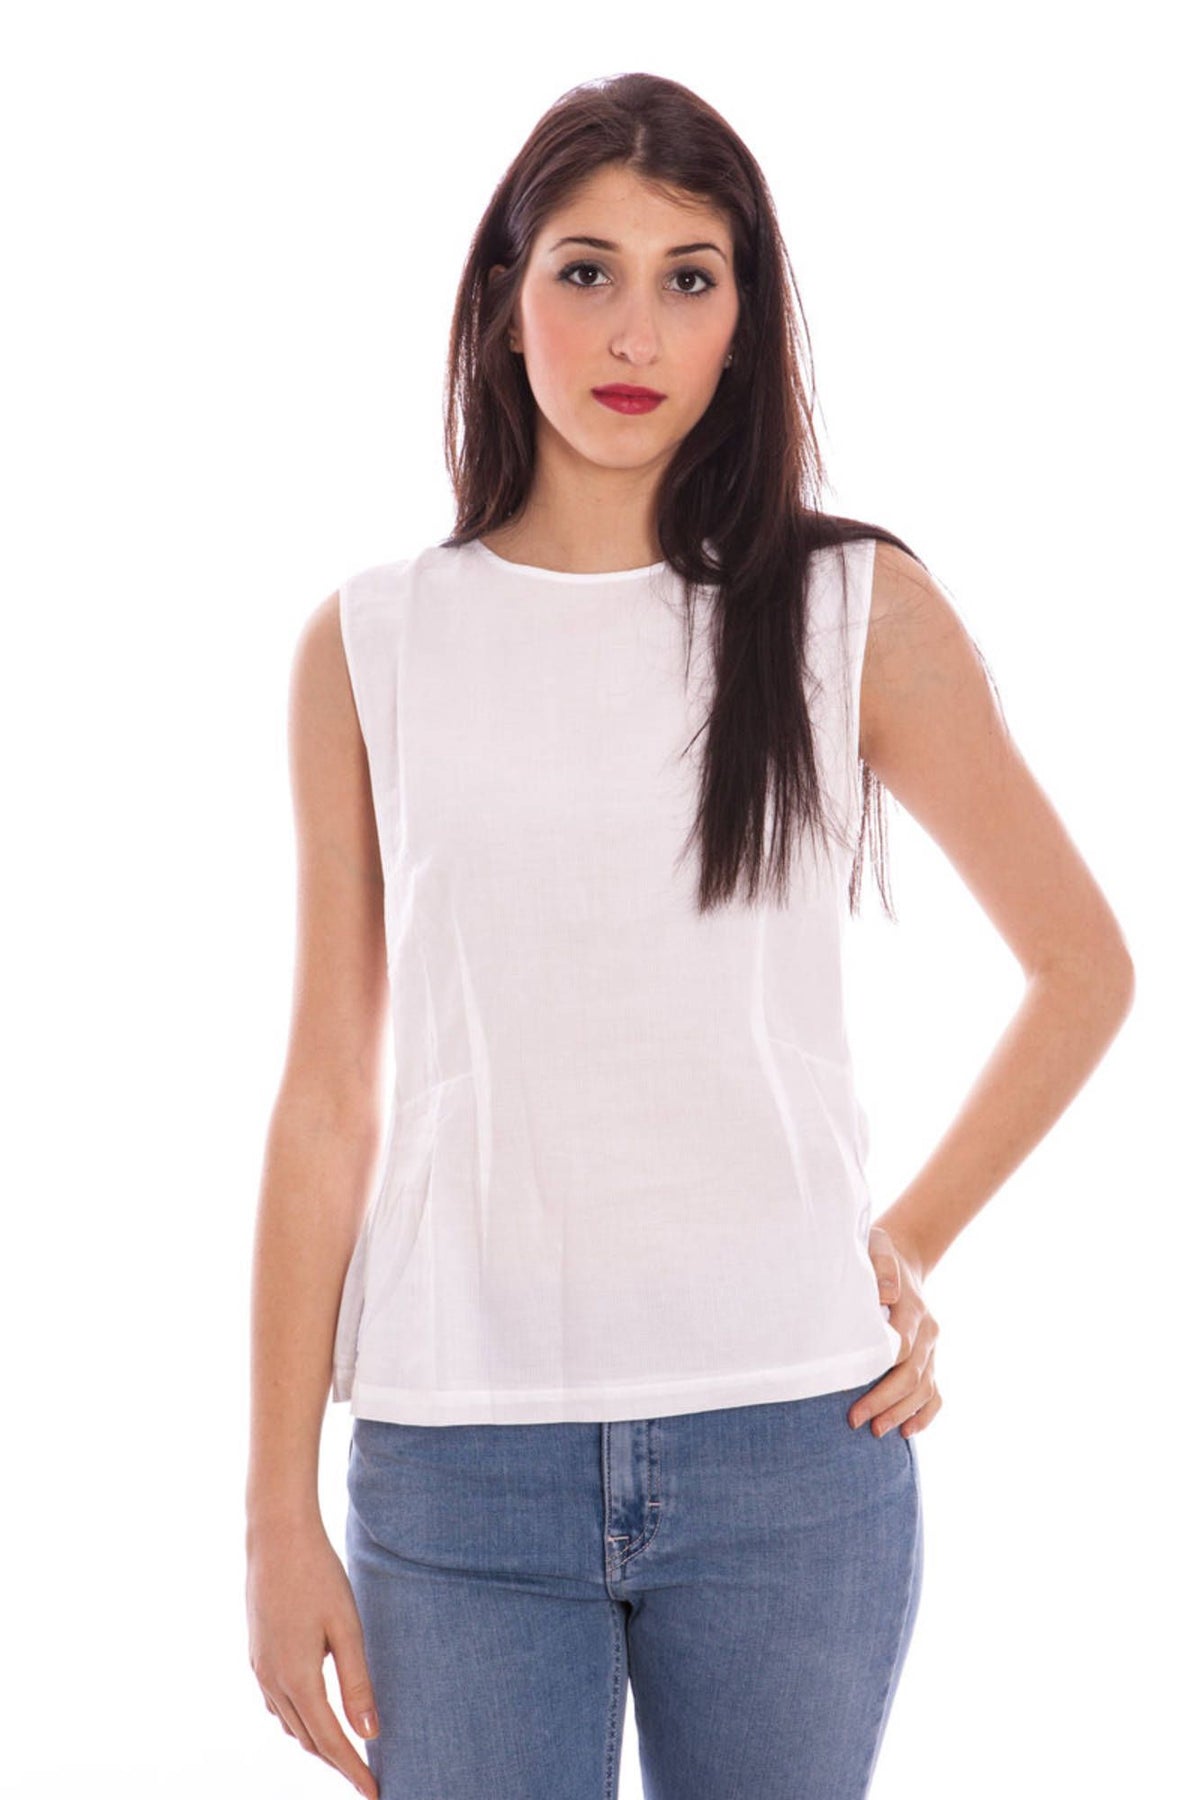 GANT Damen Top T-Shirt Shirt Oberteil mit Rundhalsausschnitt, ärmellos